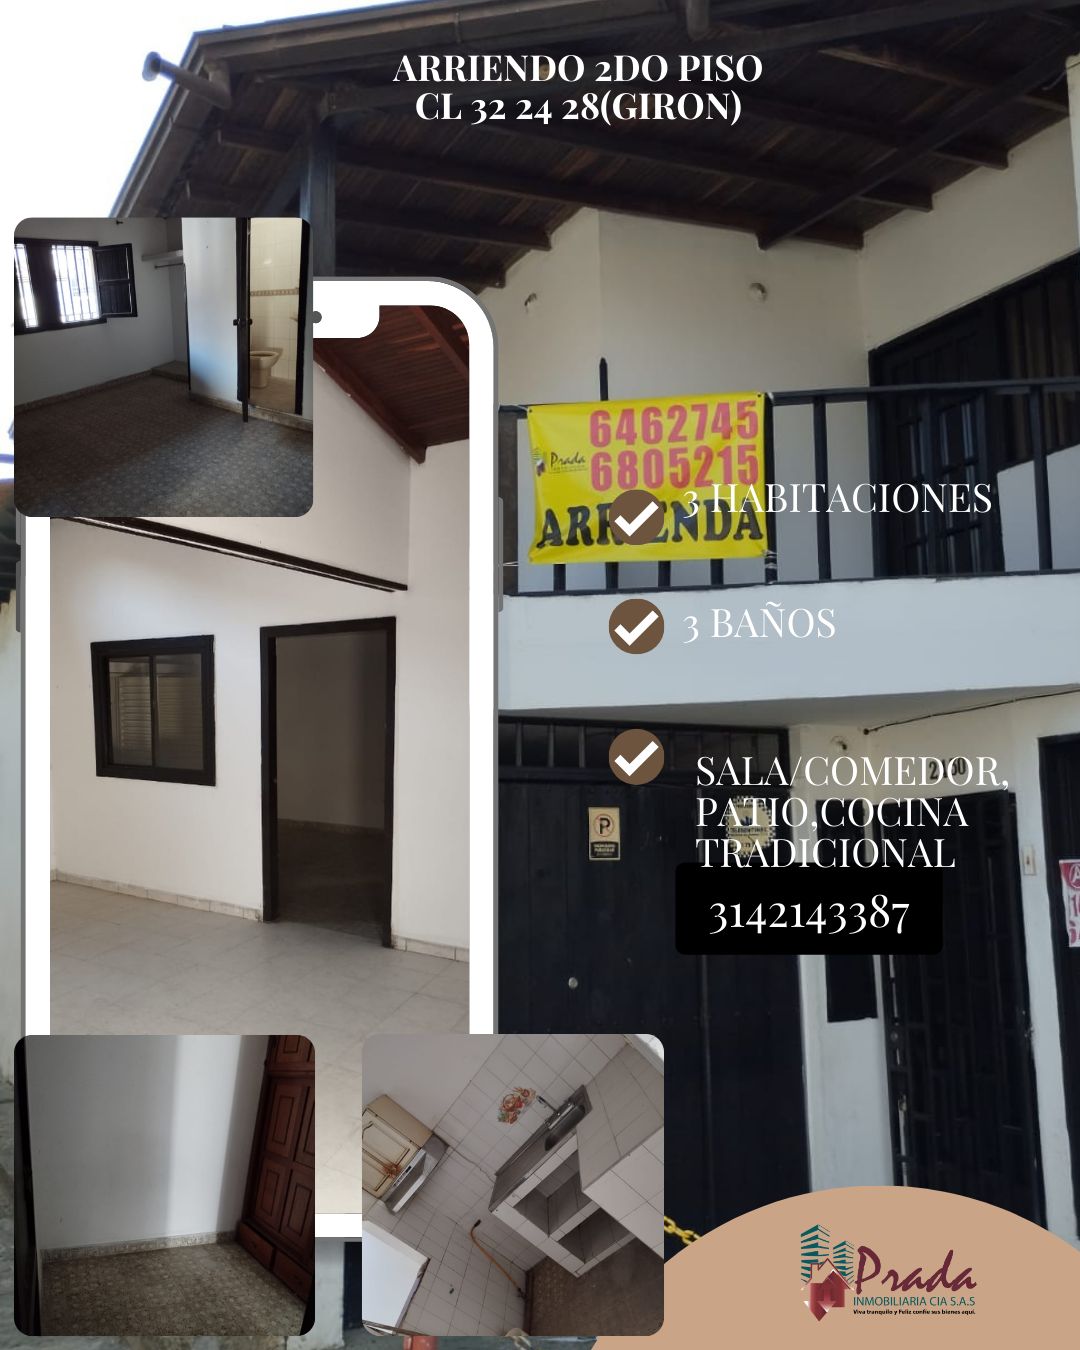 Arriendo de casas, apartamentos y más inmuebles en El Carrizal, Girón Girón  Vivienda Nueva y Usada 